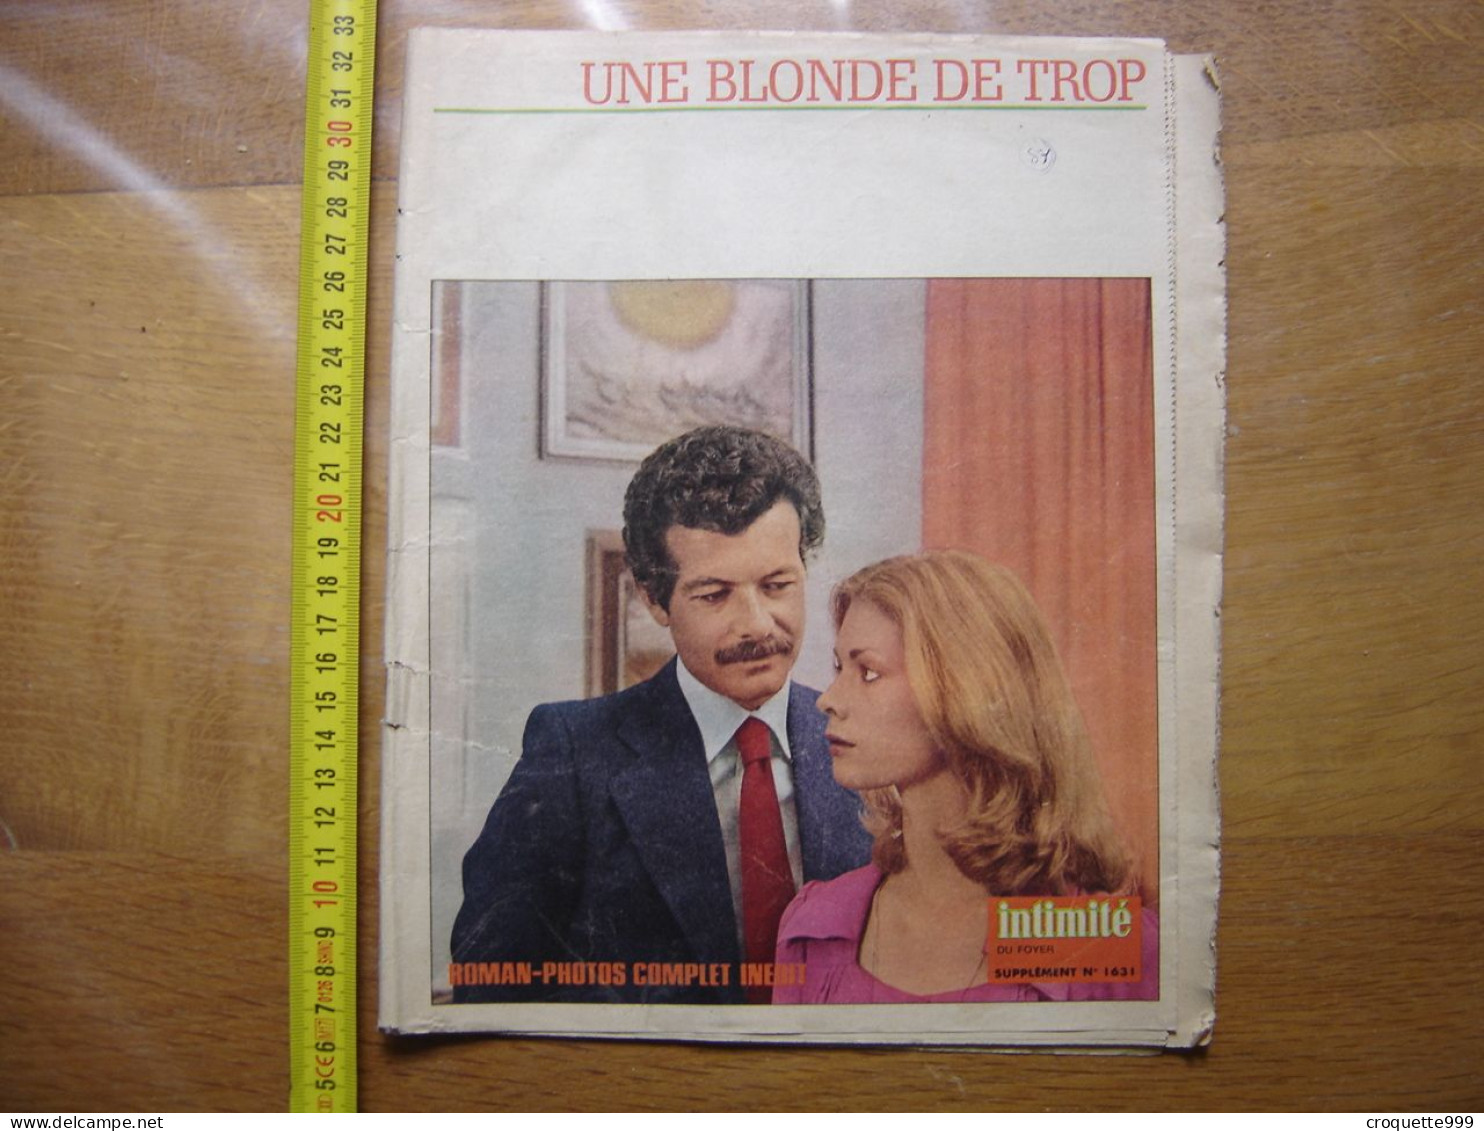 ROMAN PHOTO Supplement De Intimite Du Foyer 1631 UNE BLONDE DE TROP - Television